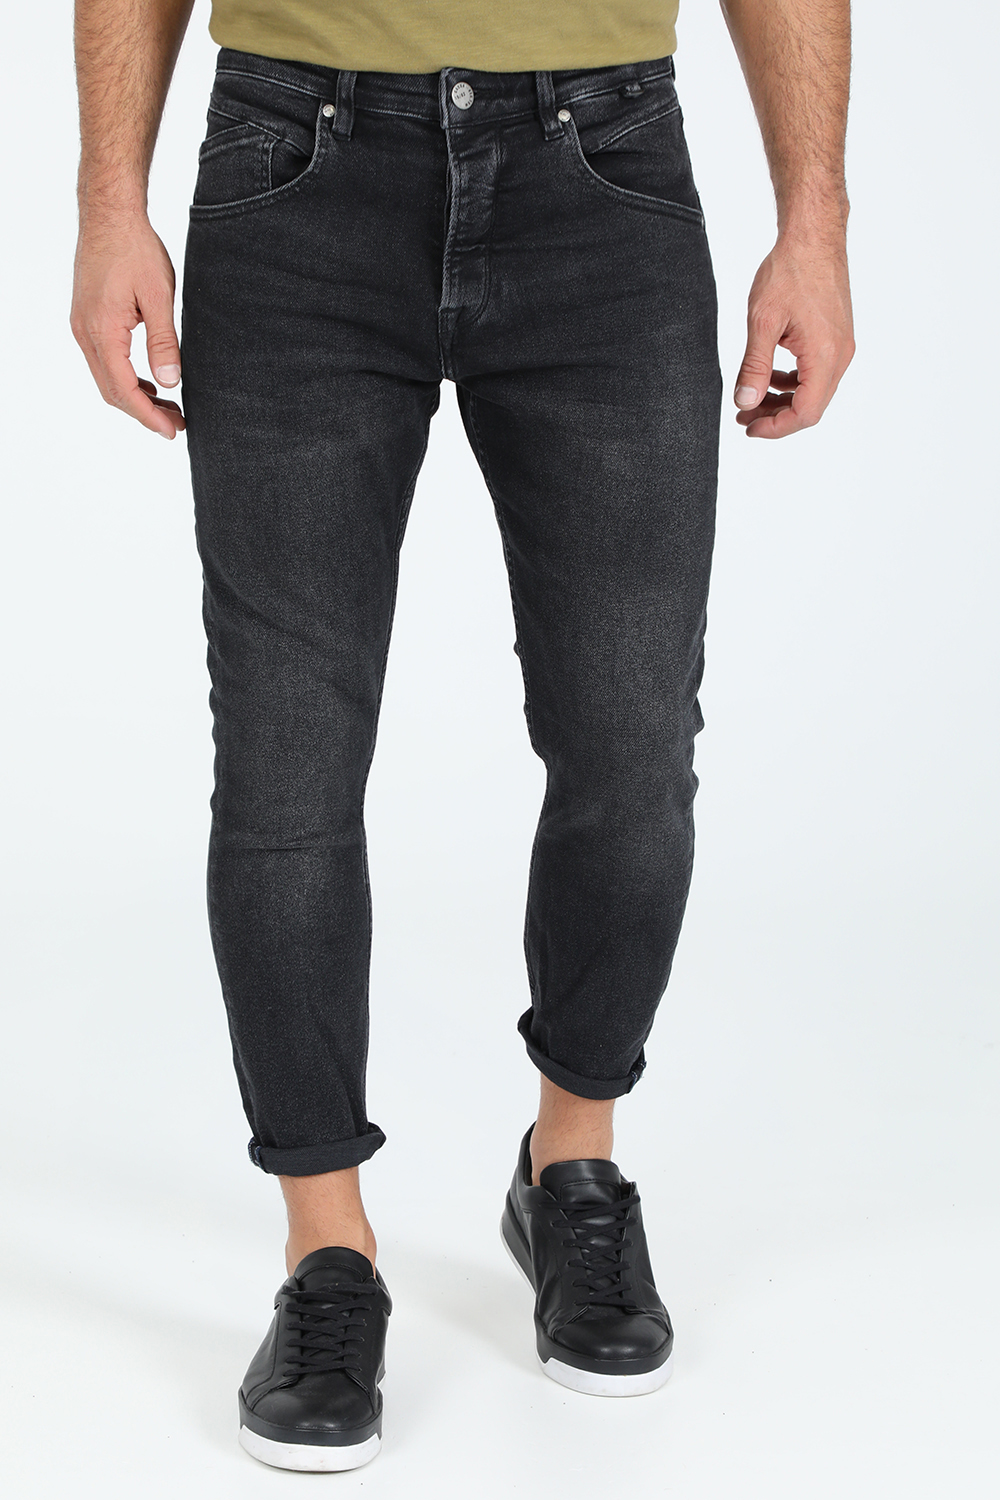 Ανδρικά/Ρούχα/Τζίν/Skinny GABBA - Ανδρικό jean παντελόνι GABBA Alex K3825 ανθρακί